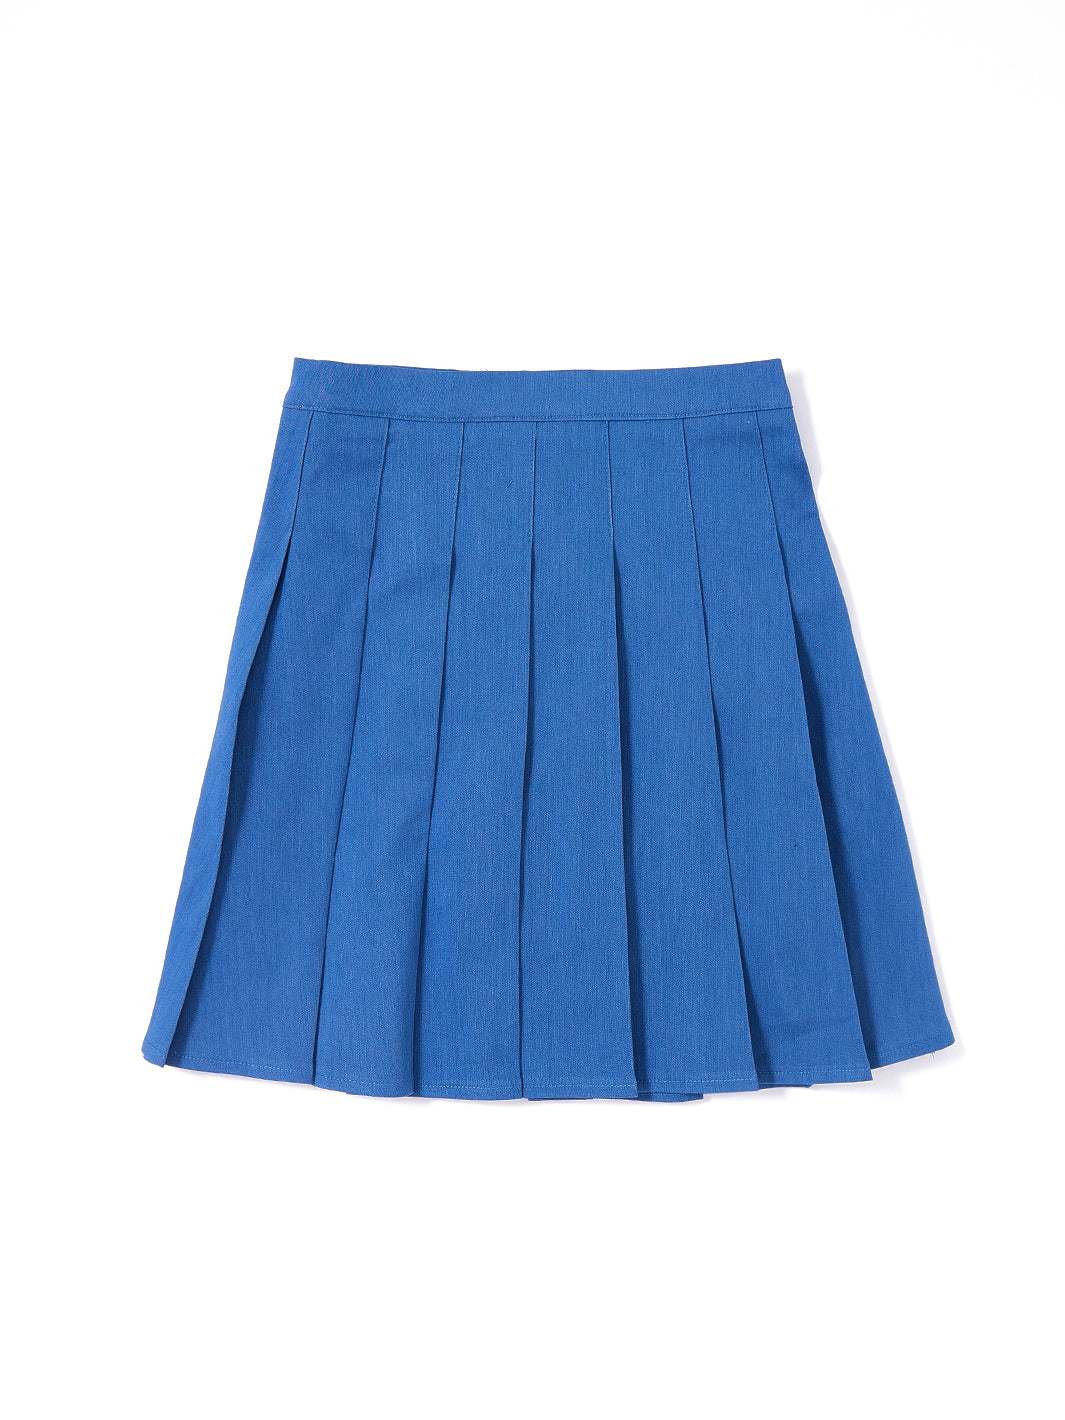 Denim Pleated Skirt - Lt. Blue